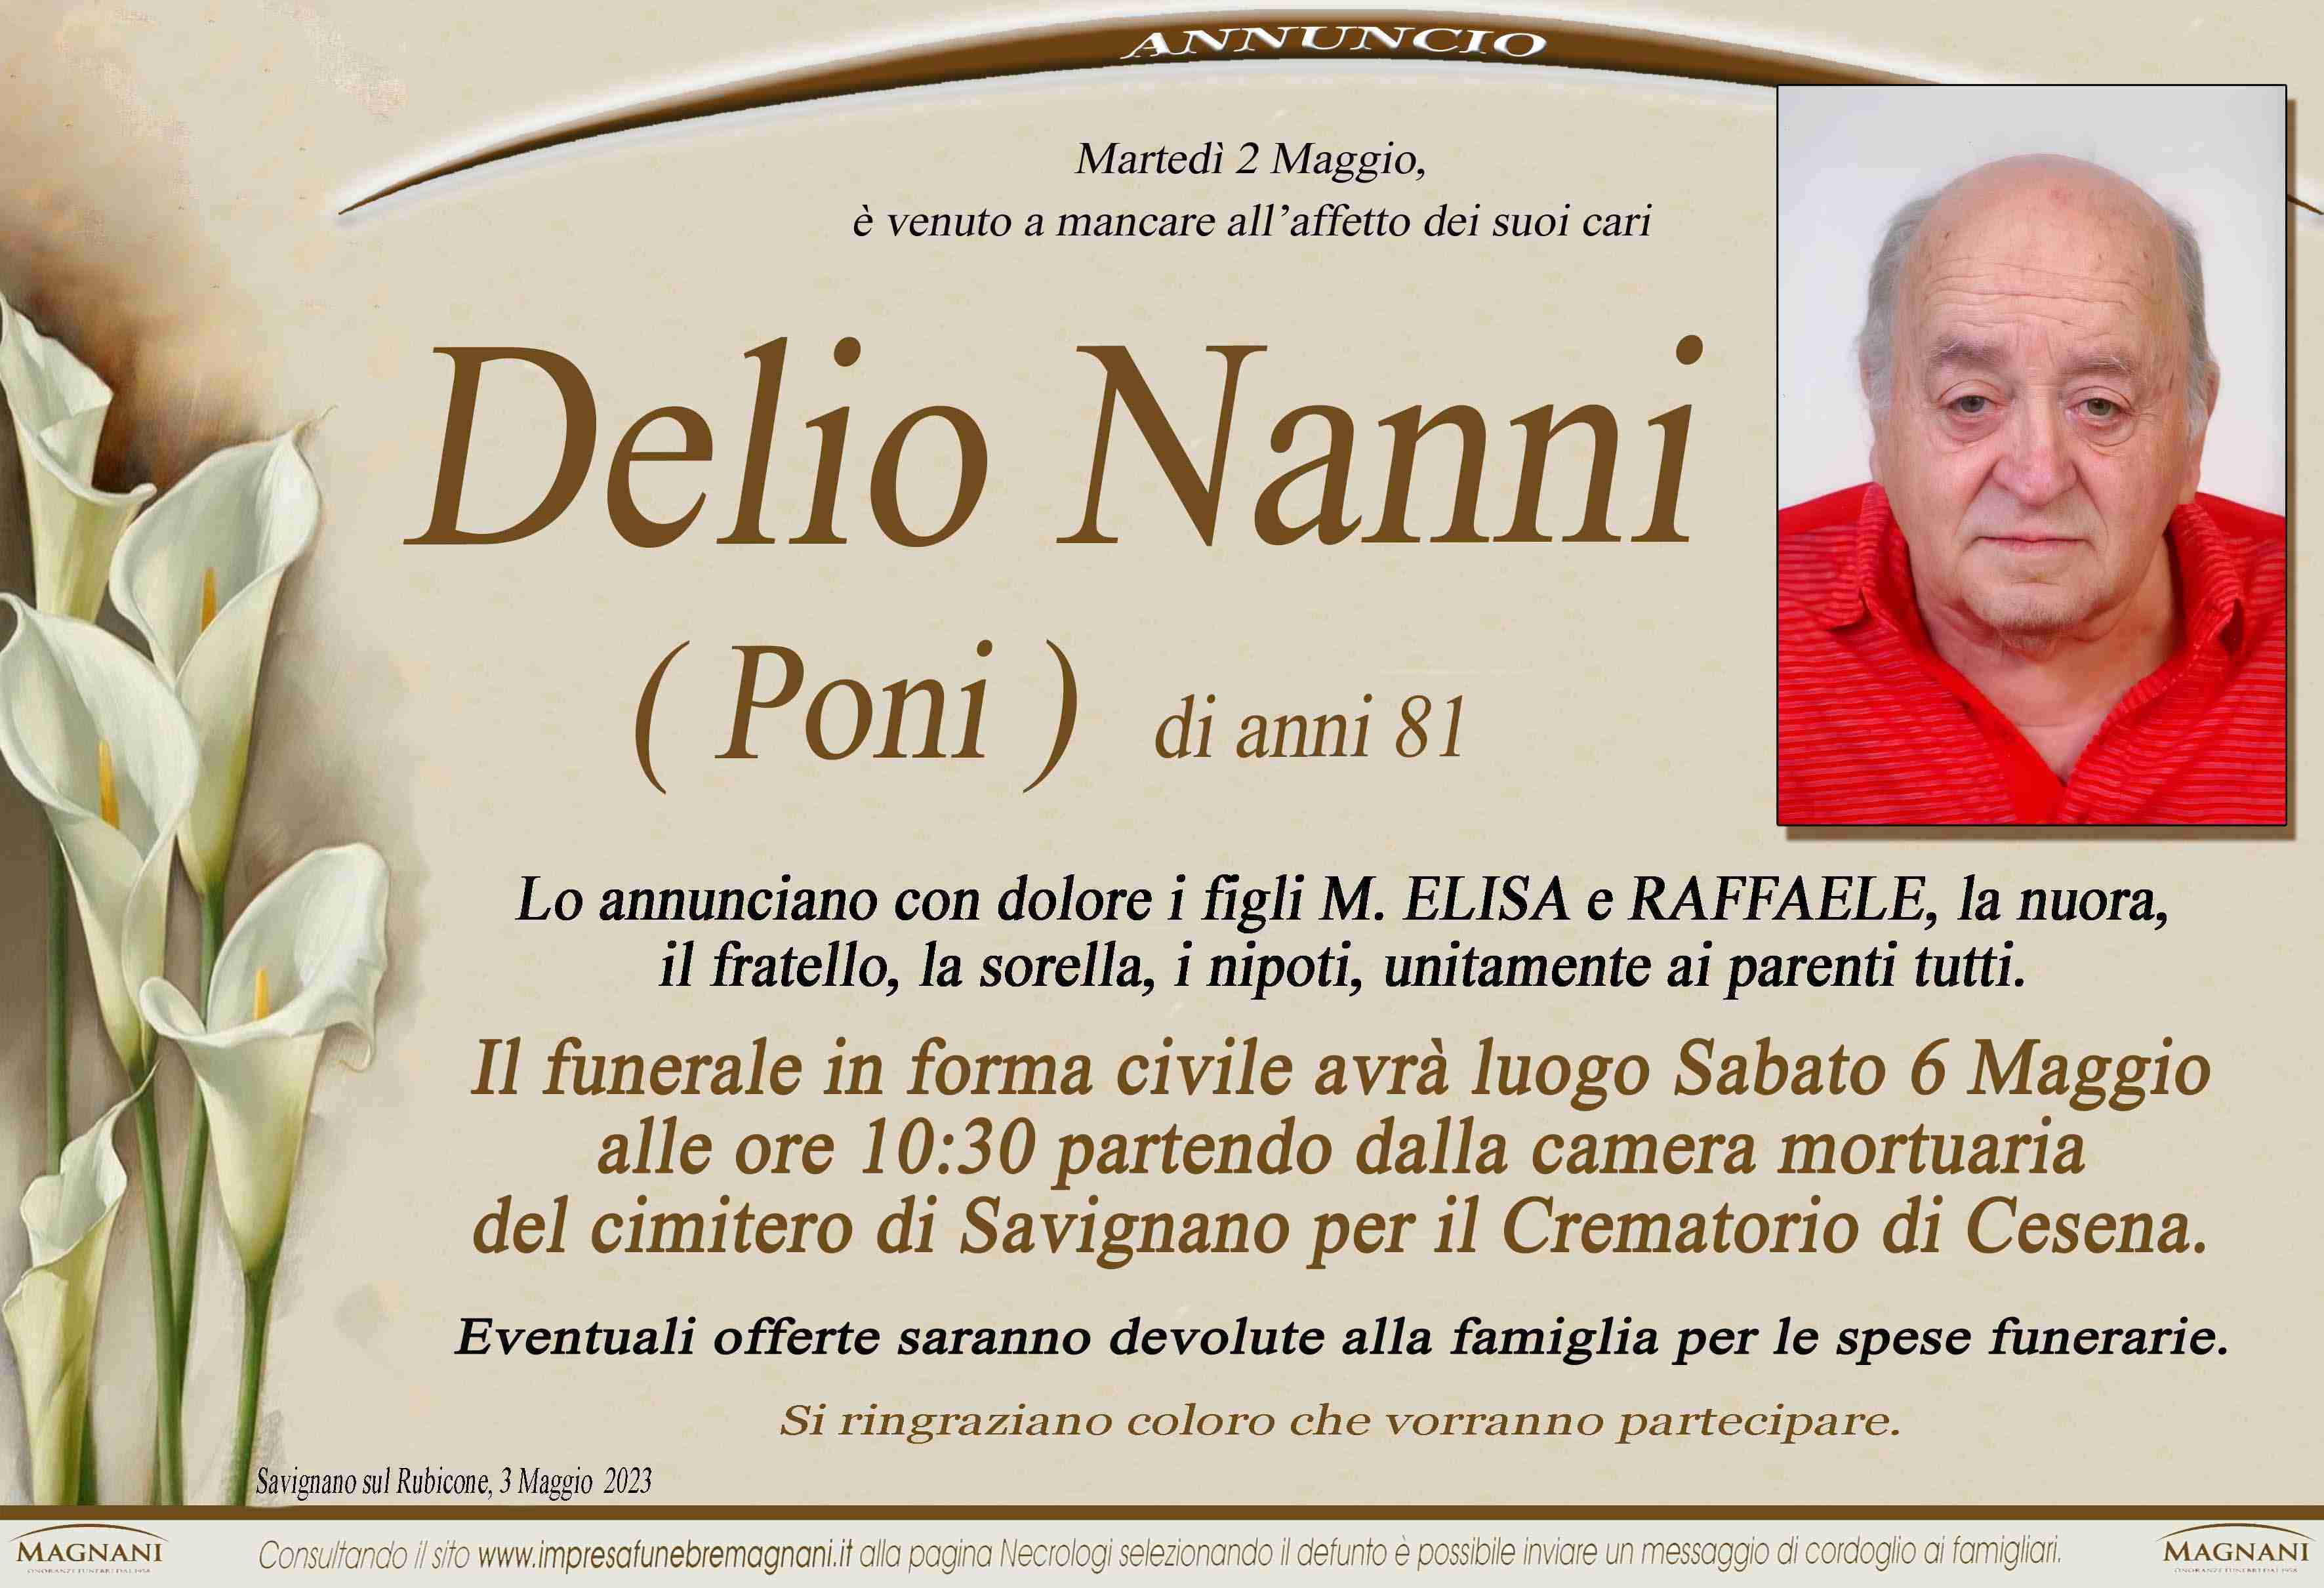 Delio Nanni